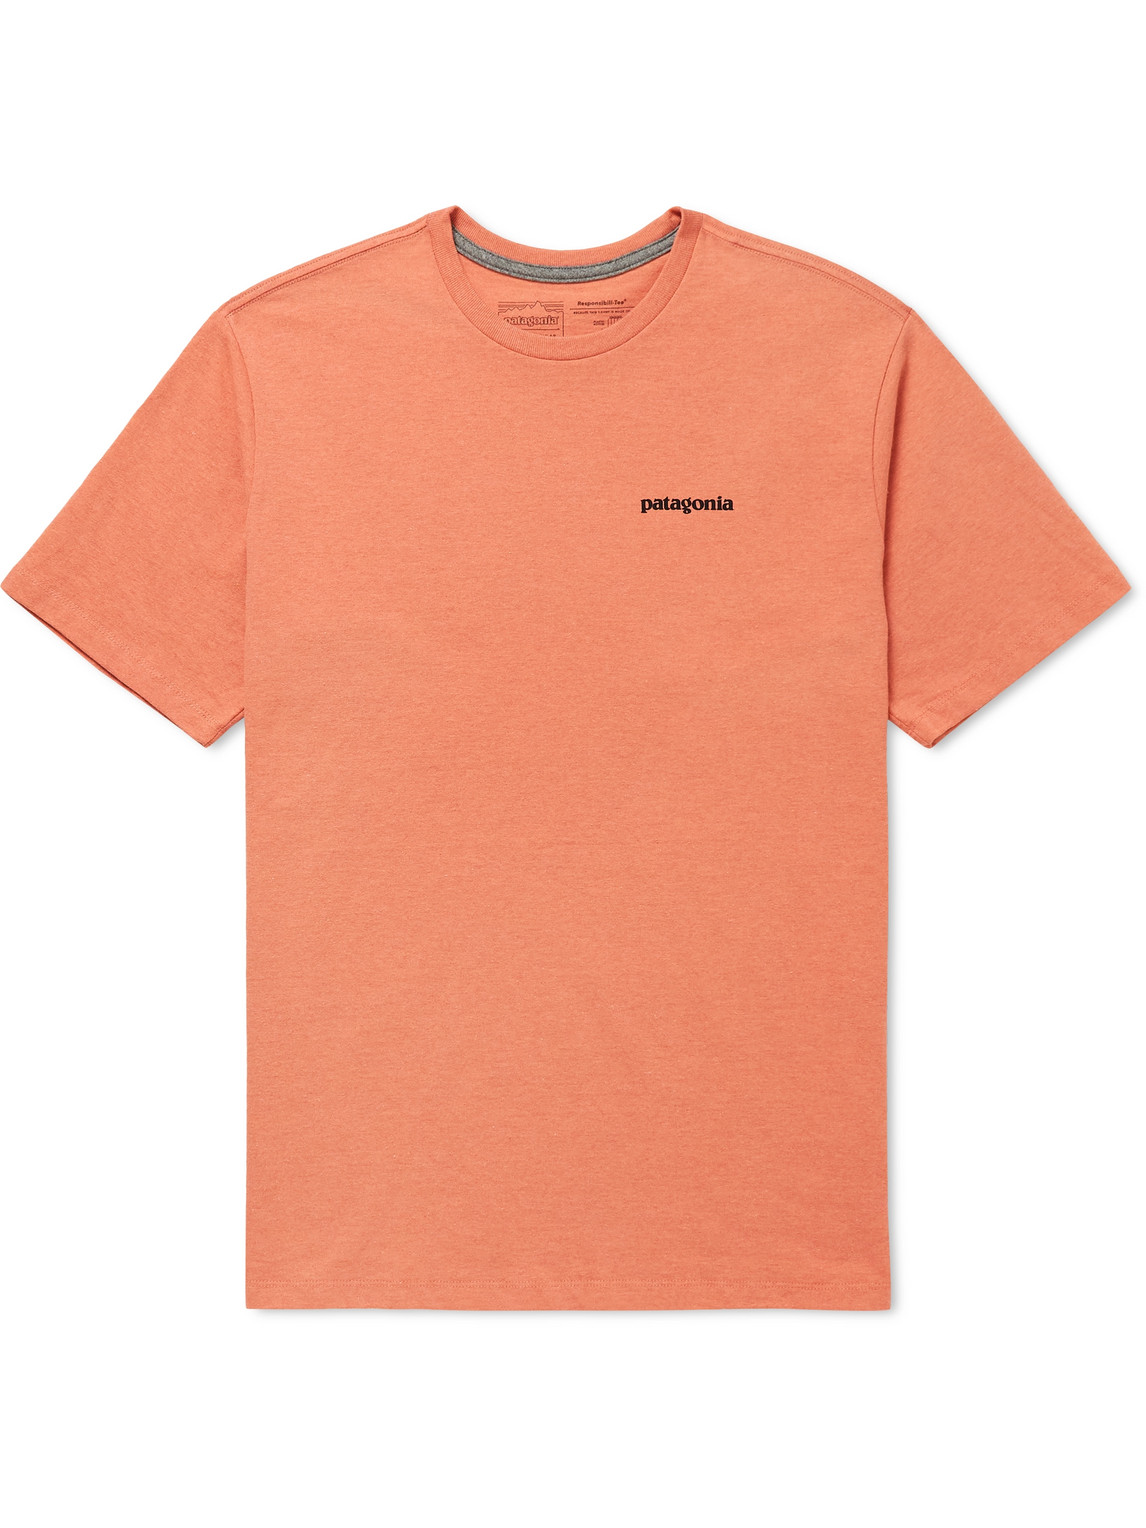 Patagonia P-6 Logo Responsibili-tee Printed Cotton-blend Jersey T-shirt In Orange